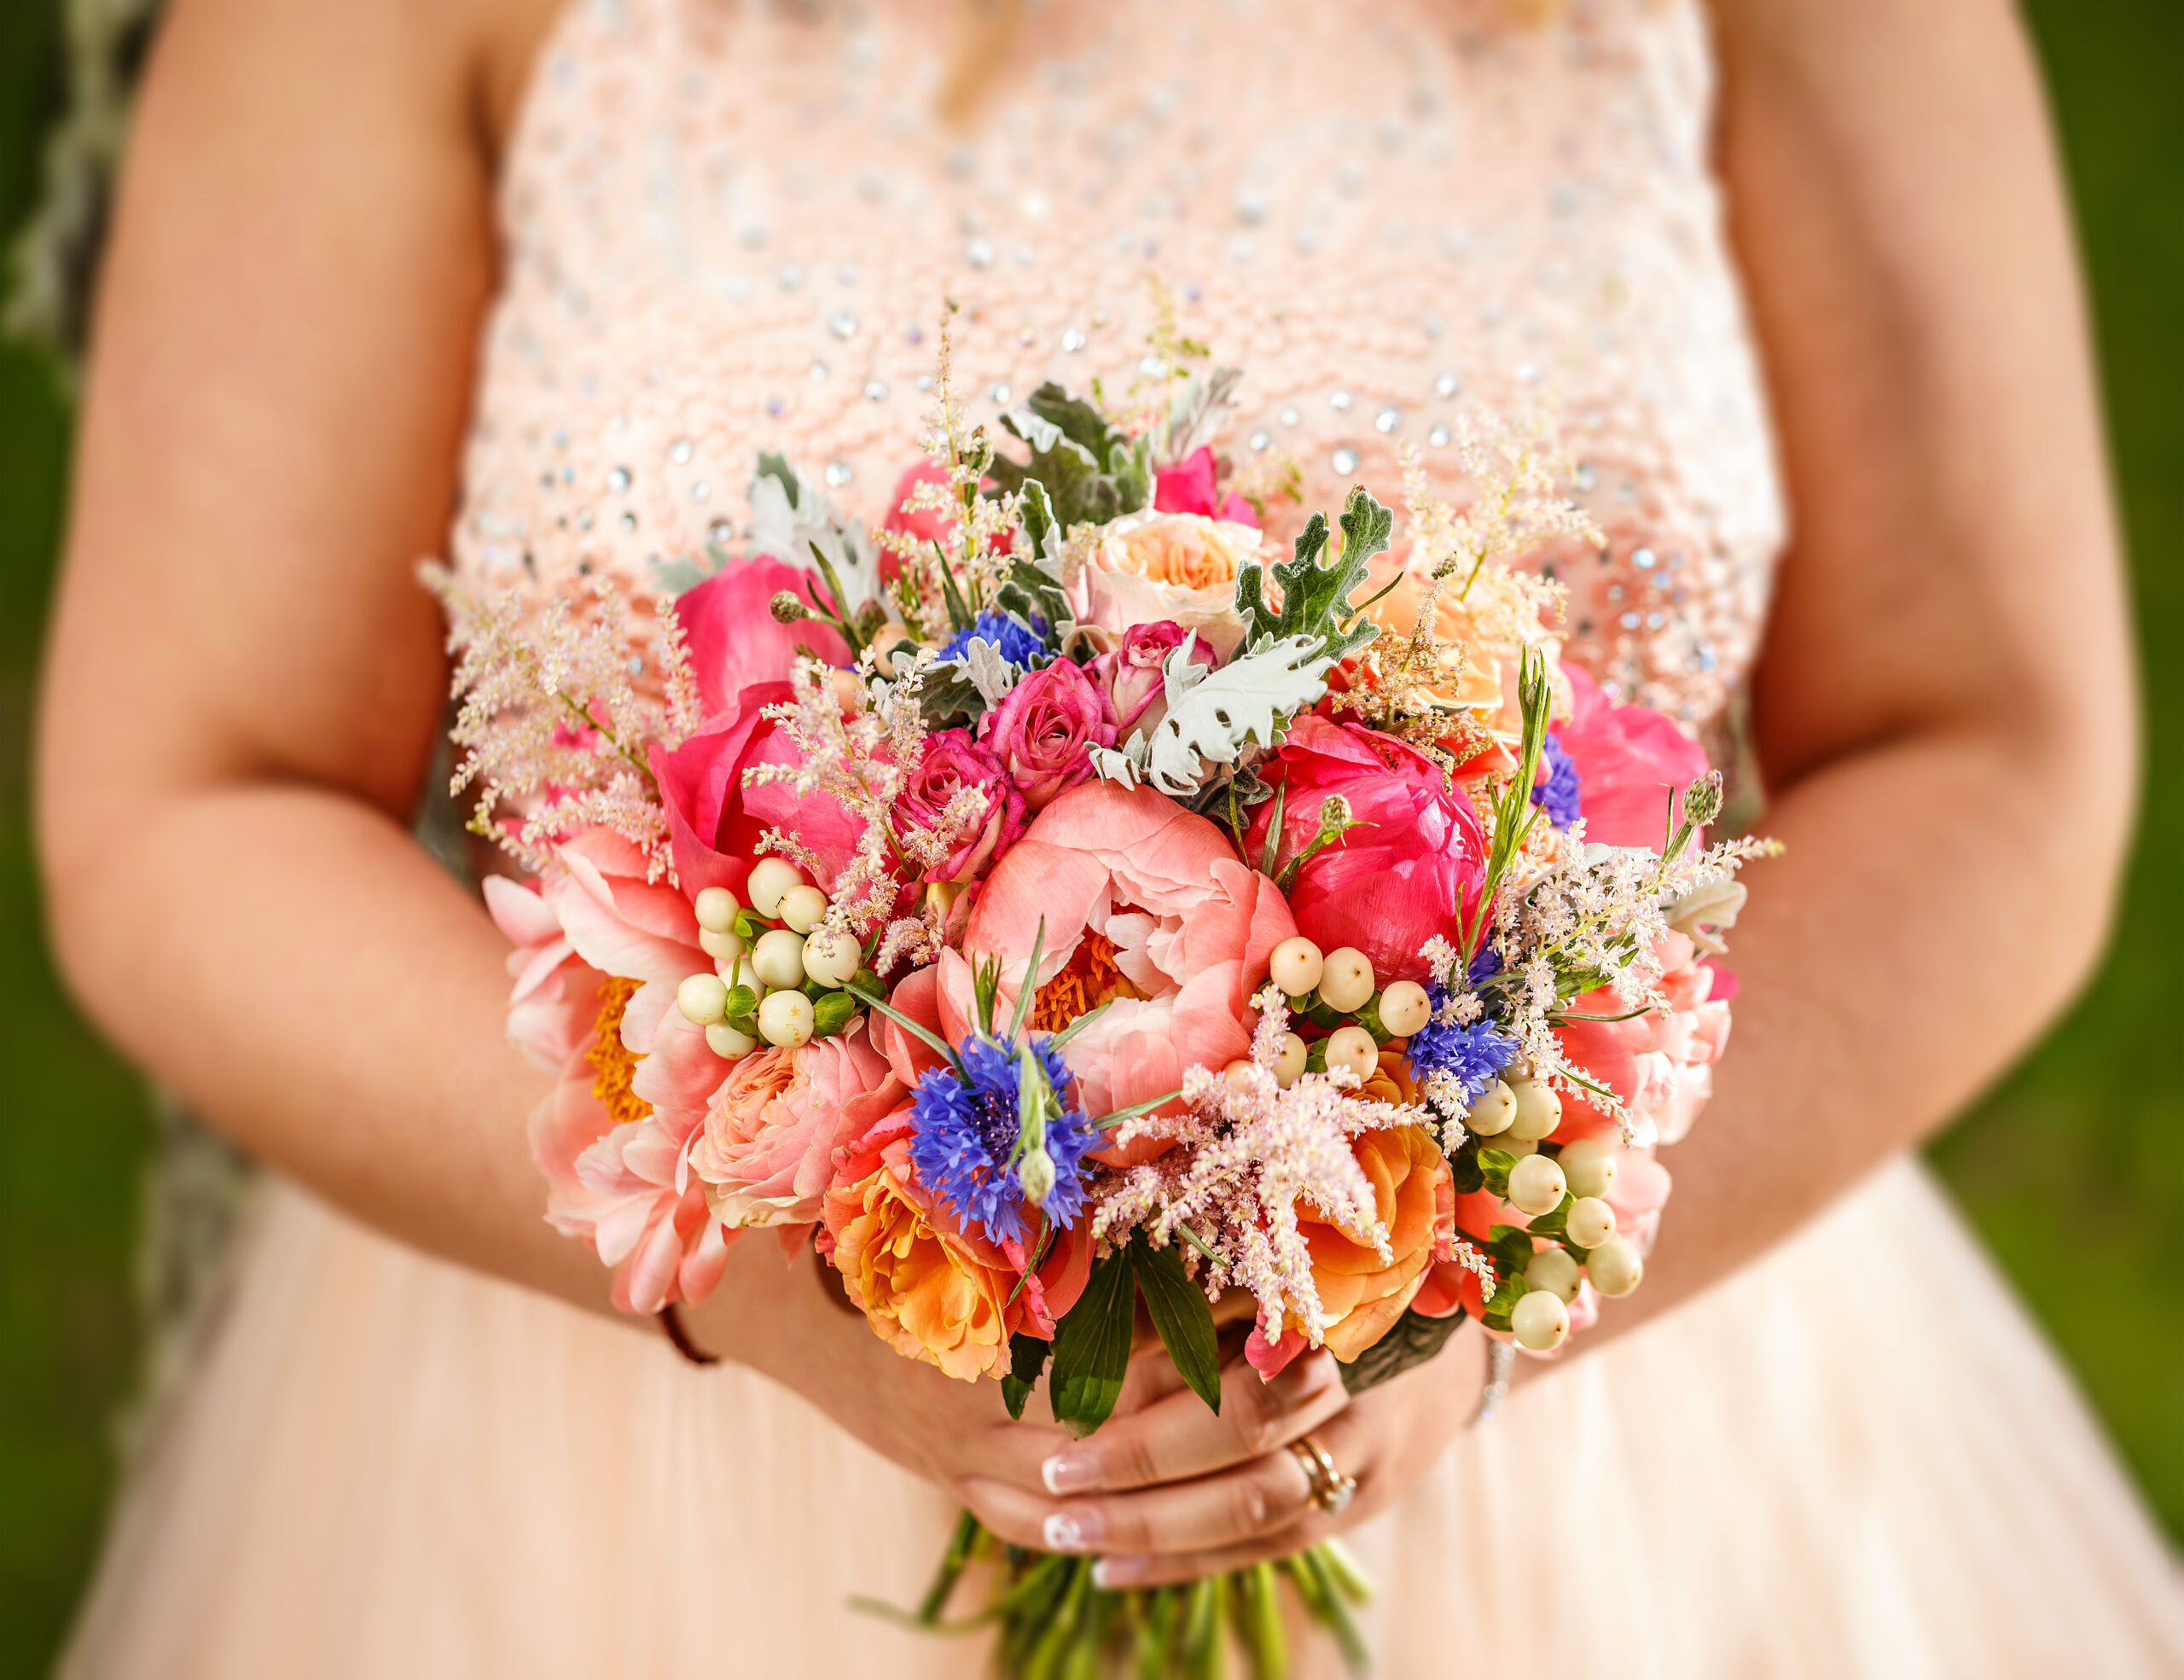 Beauty wedding bouquet in bride's hands